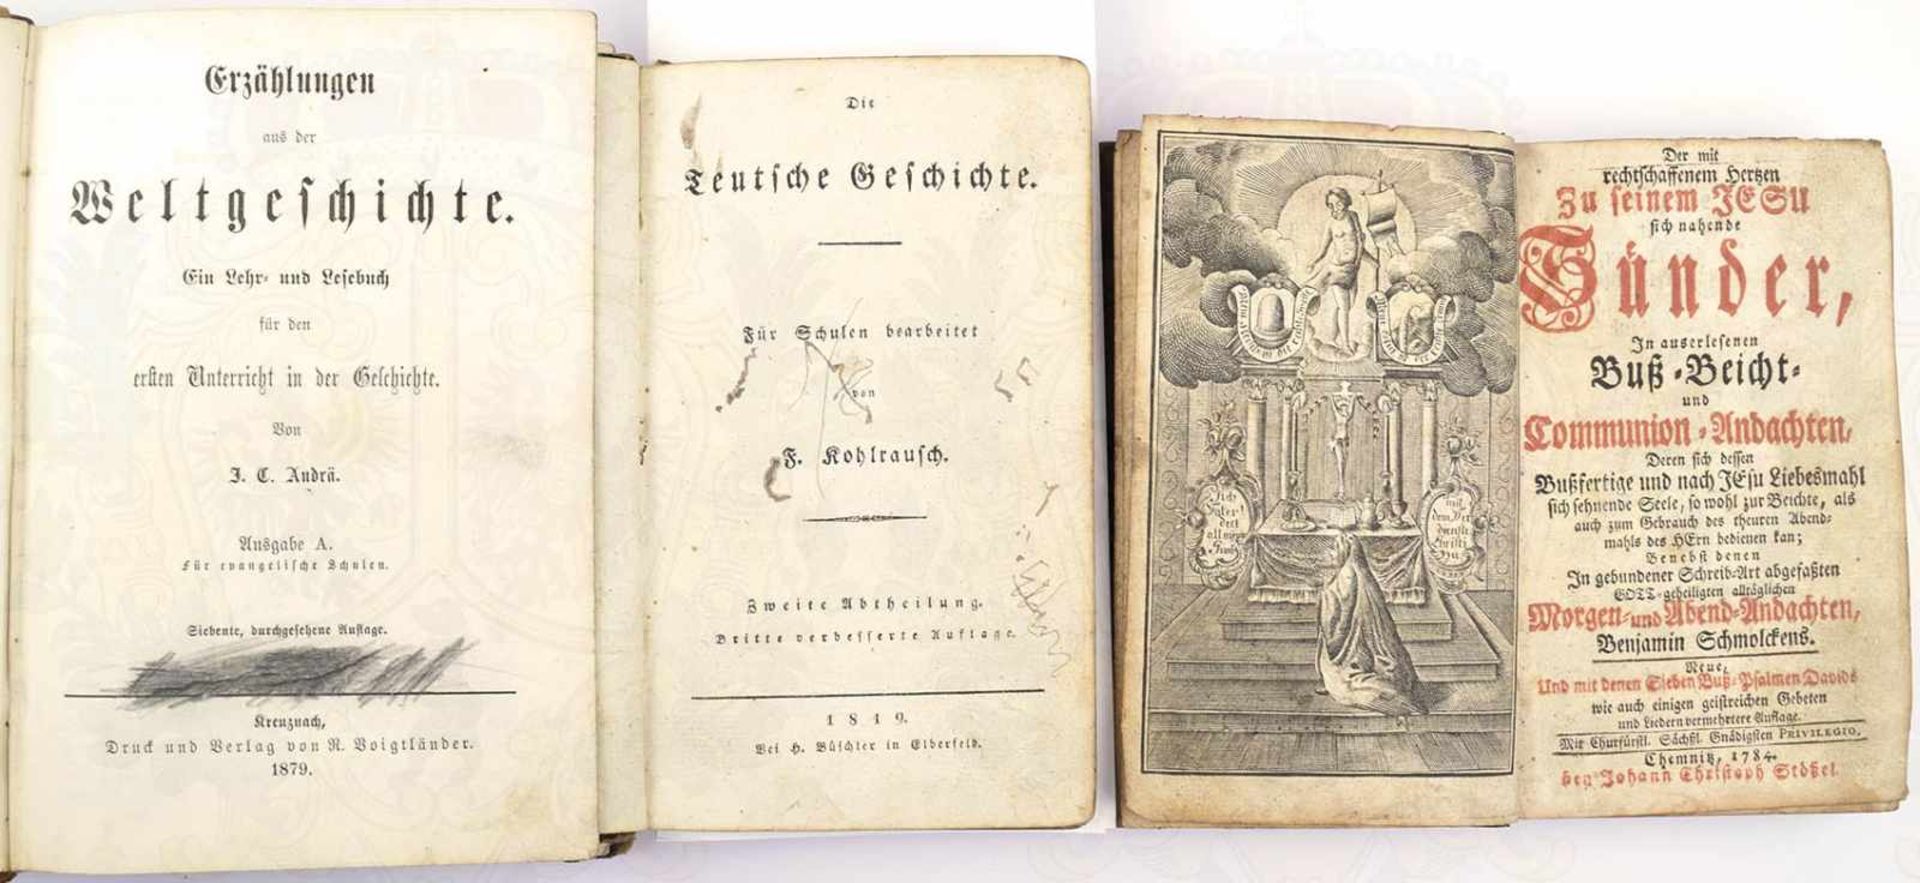 3 TITEL, Die Deutsche Geschichte, 1819; Erzählungen aus der Weltgeschichte, 1879; Der mit